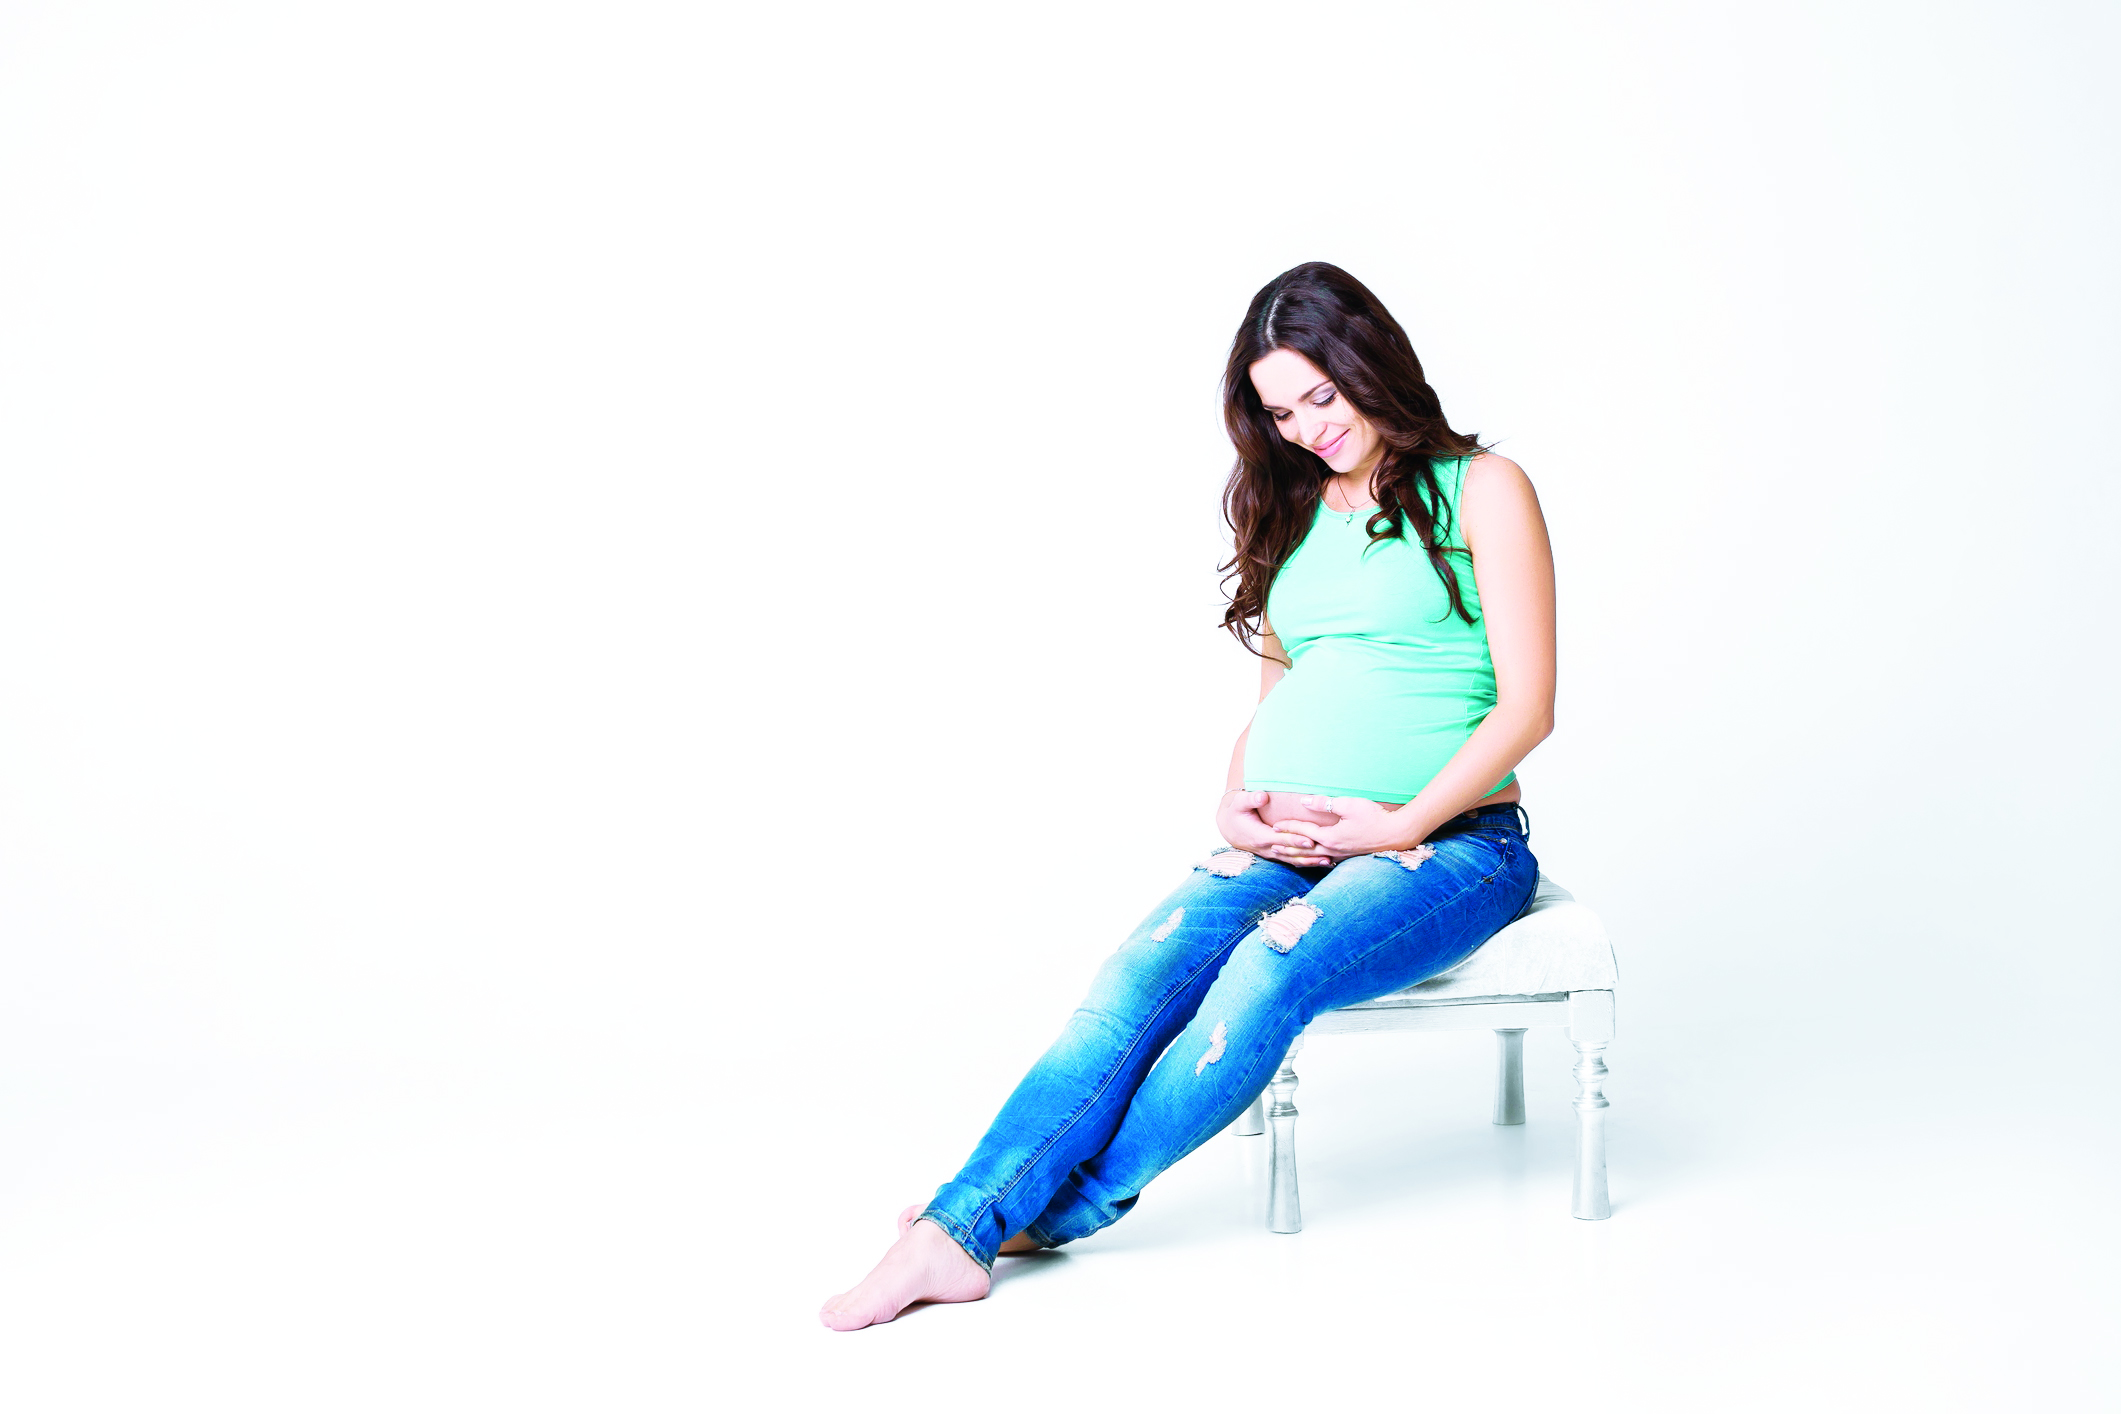 33 недели беременности сильно